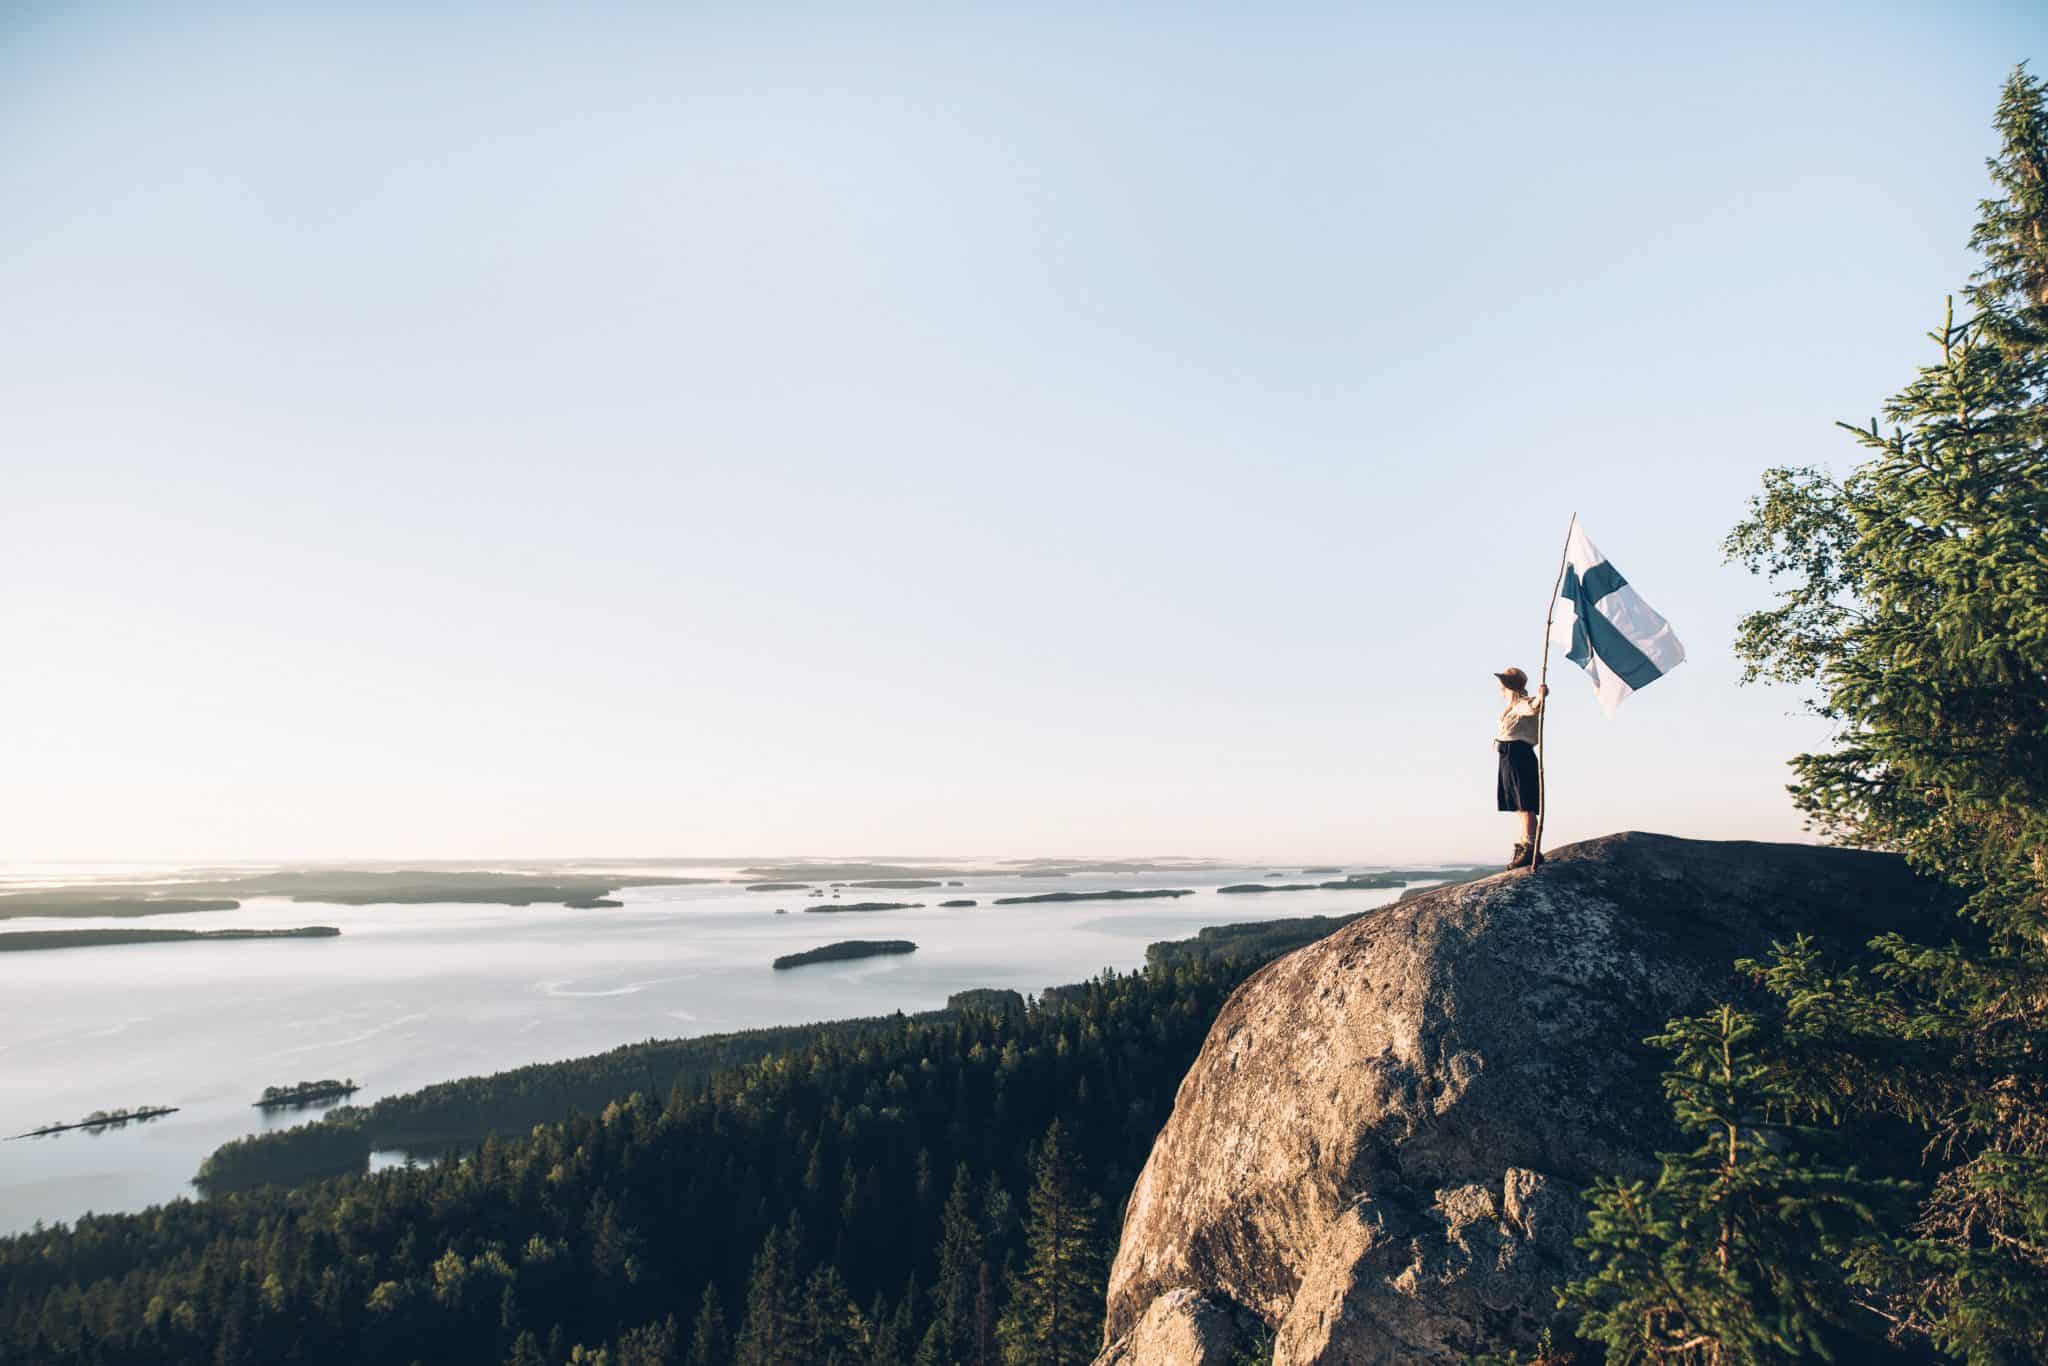 Kolin kalliolla seisoo ihminen, joka pitää Suomen lippua. Hänen vasemmalla puolellaan alarinteessä aukeaa näkymä Saimaalle, ja järvessä on silmänkantamattomiin saaria, joissa kasvaa metsää.